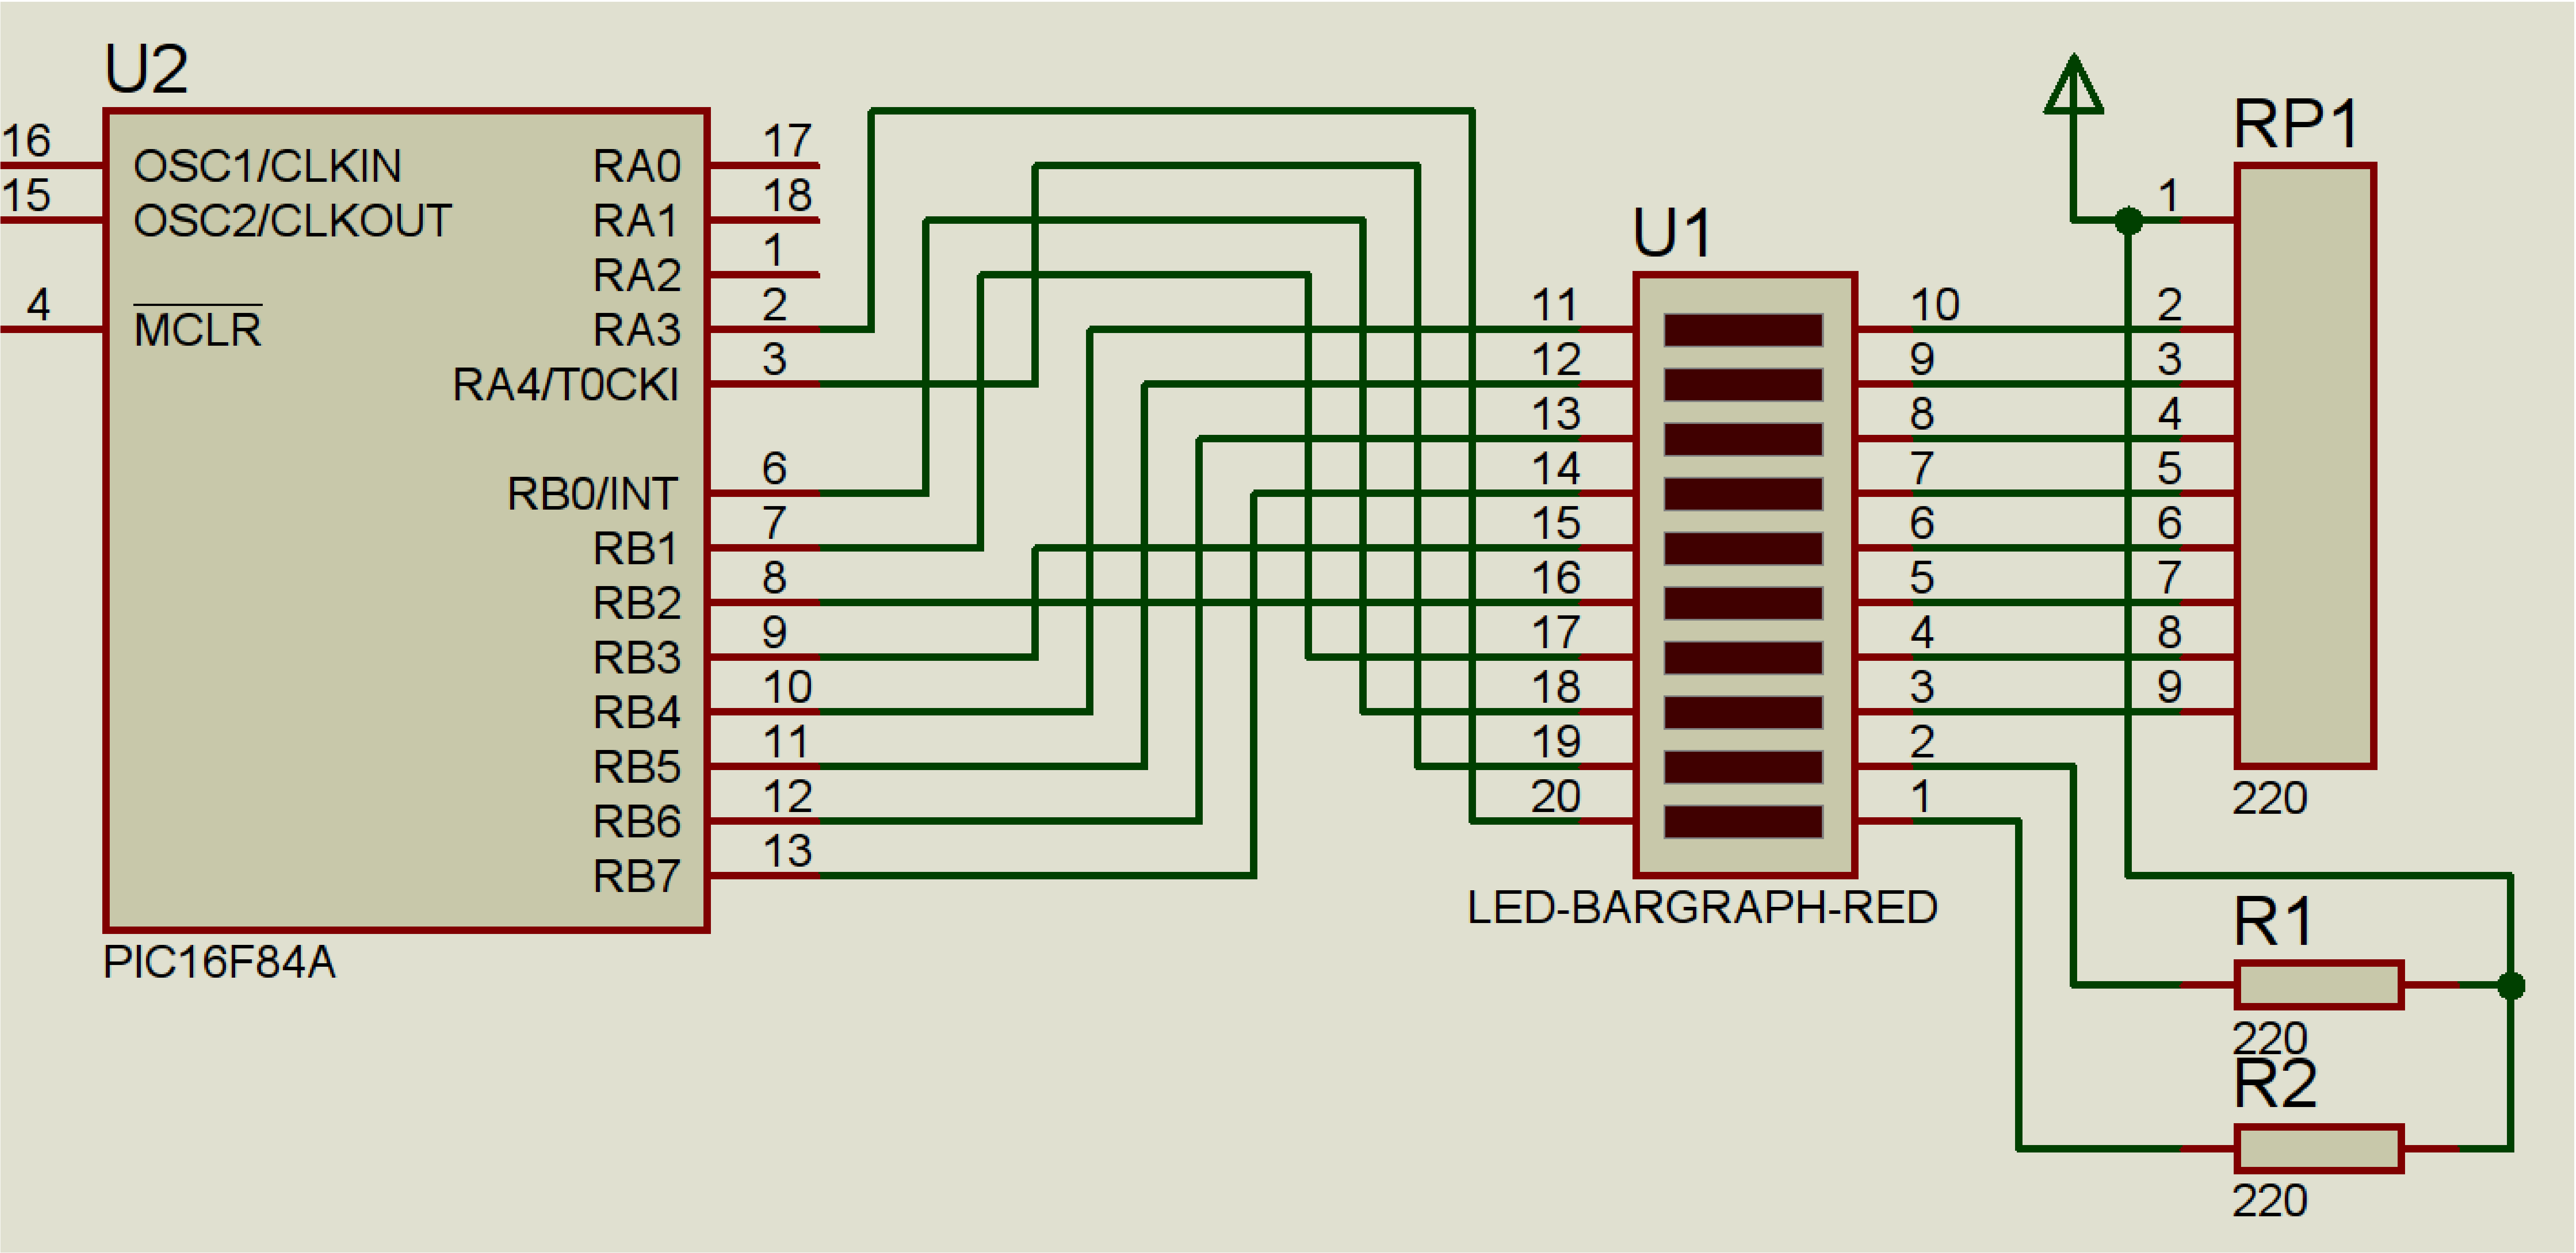 Circuit amb barra de LEDs